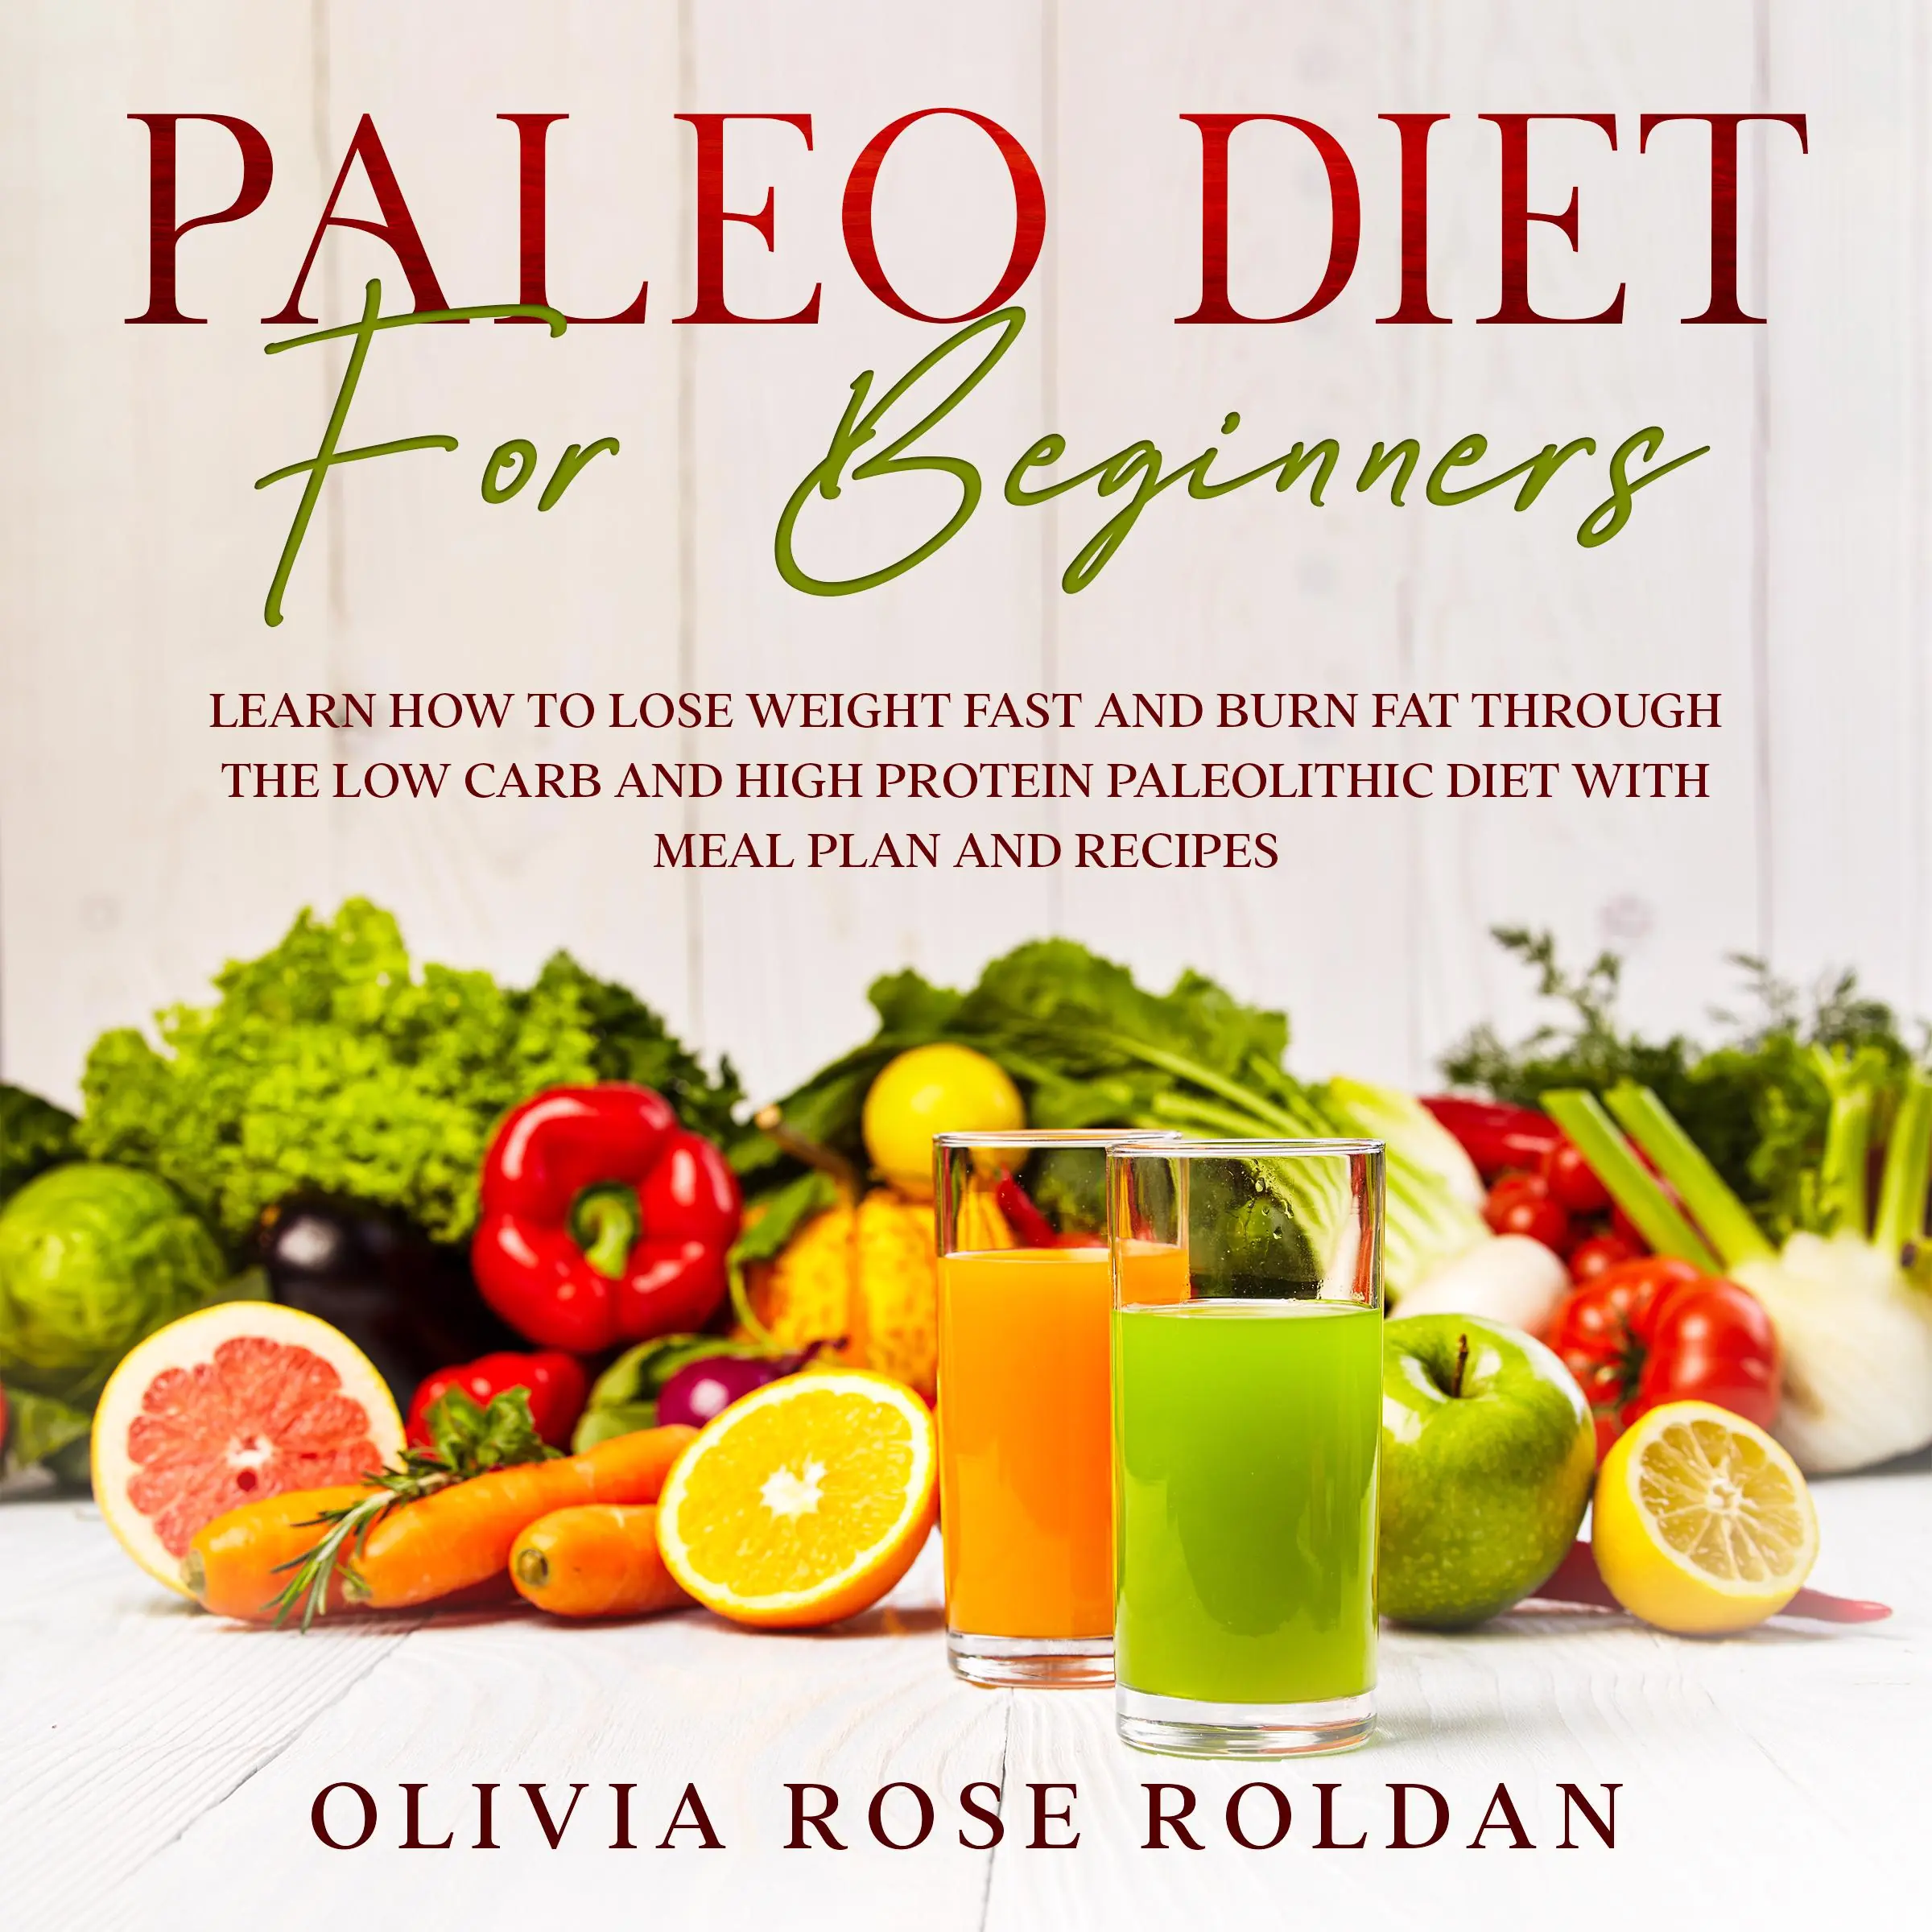 Paleo Diet for Beginners Audiobook by Olivia Rose Roldan